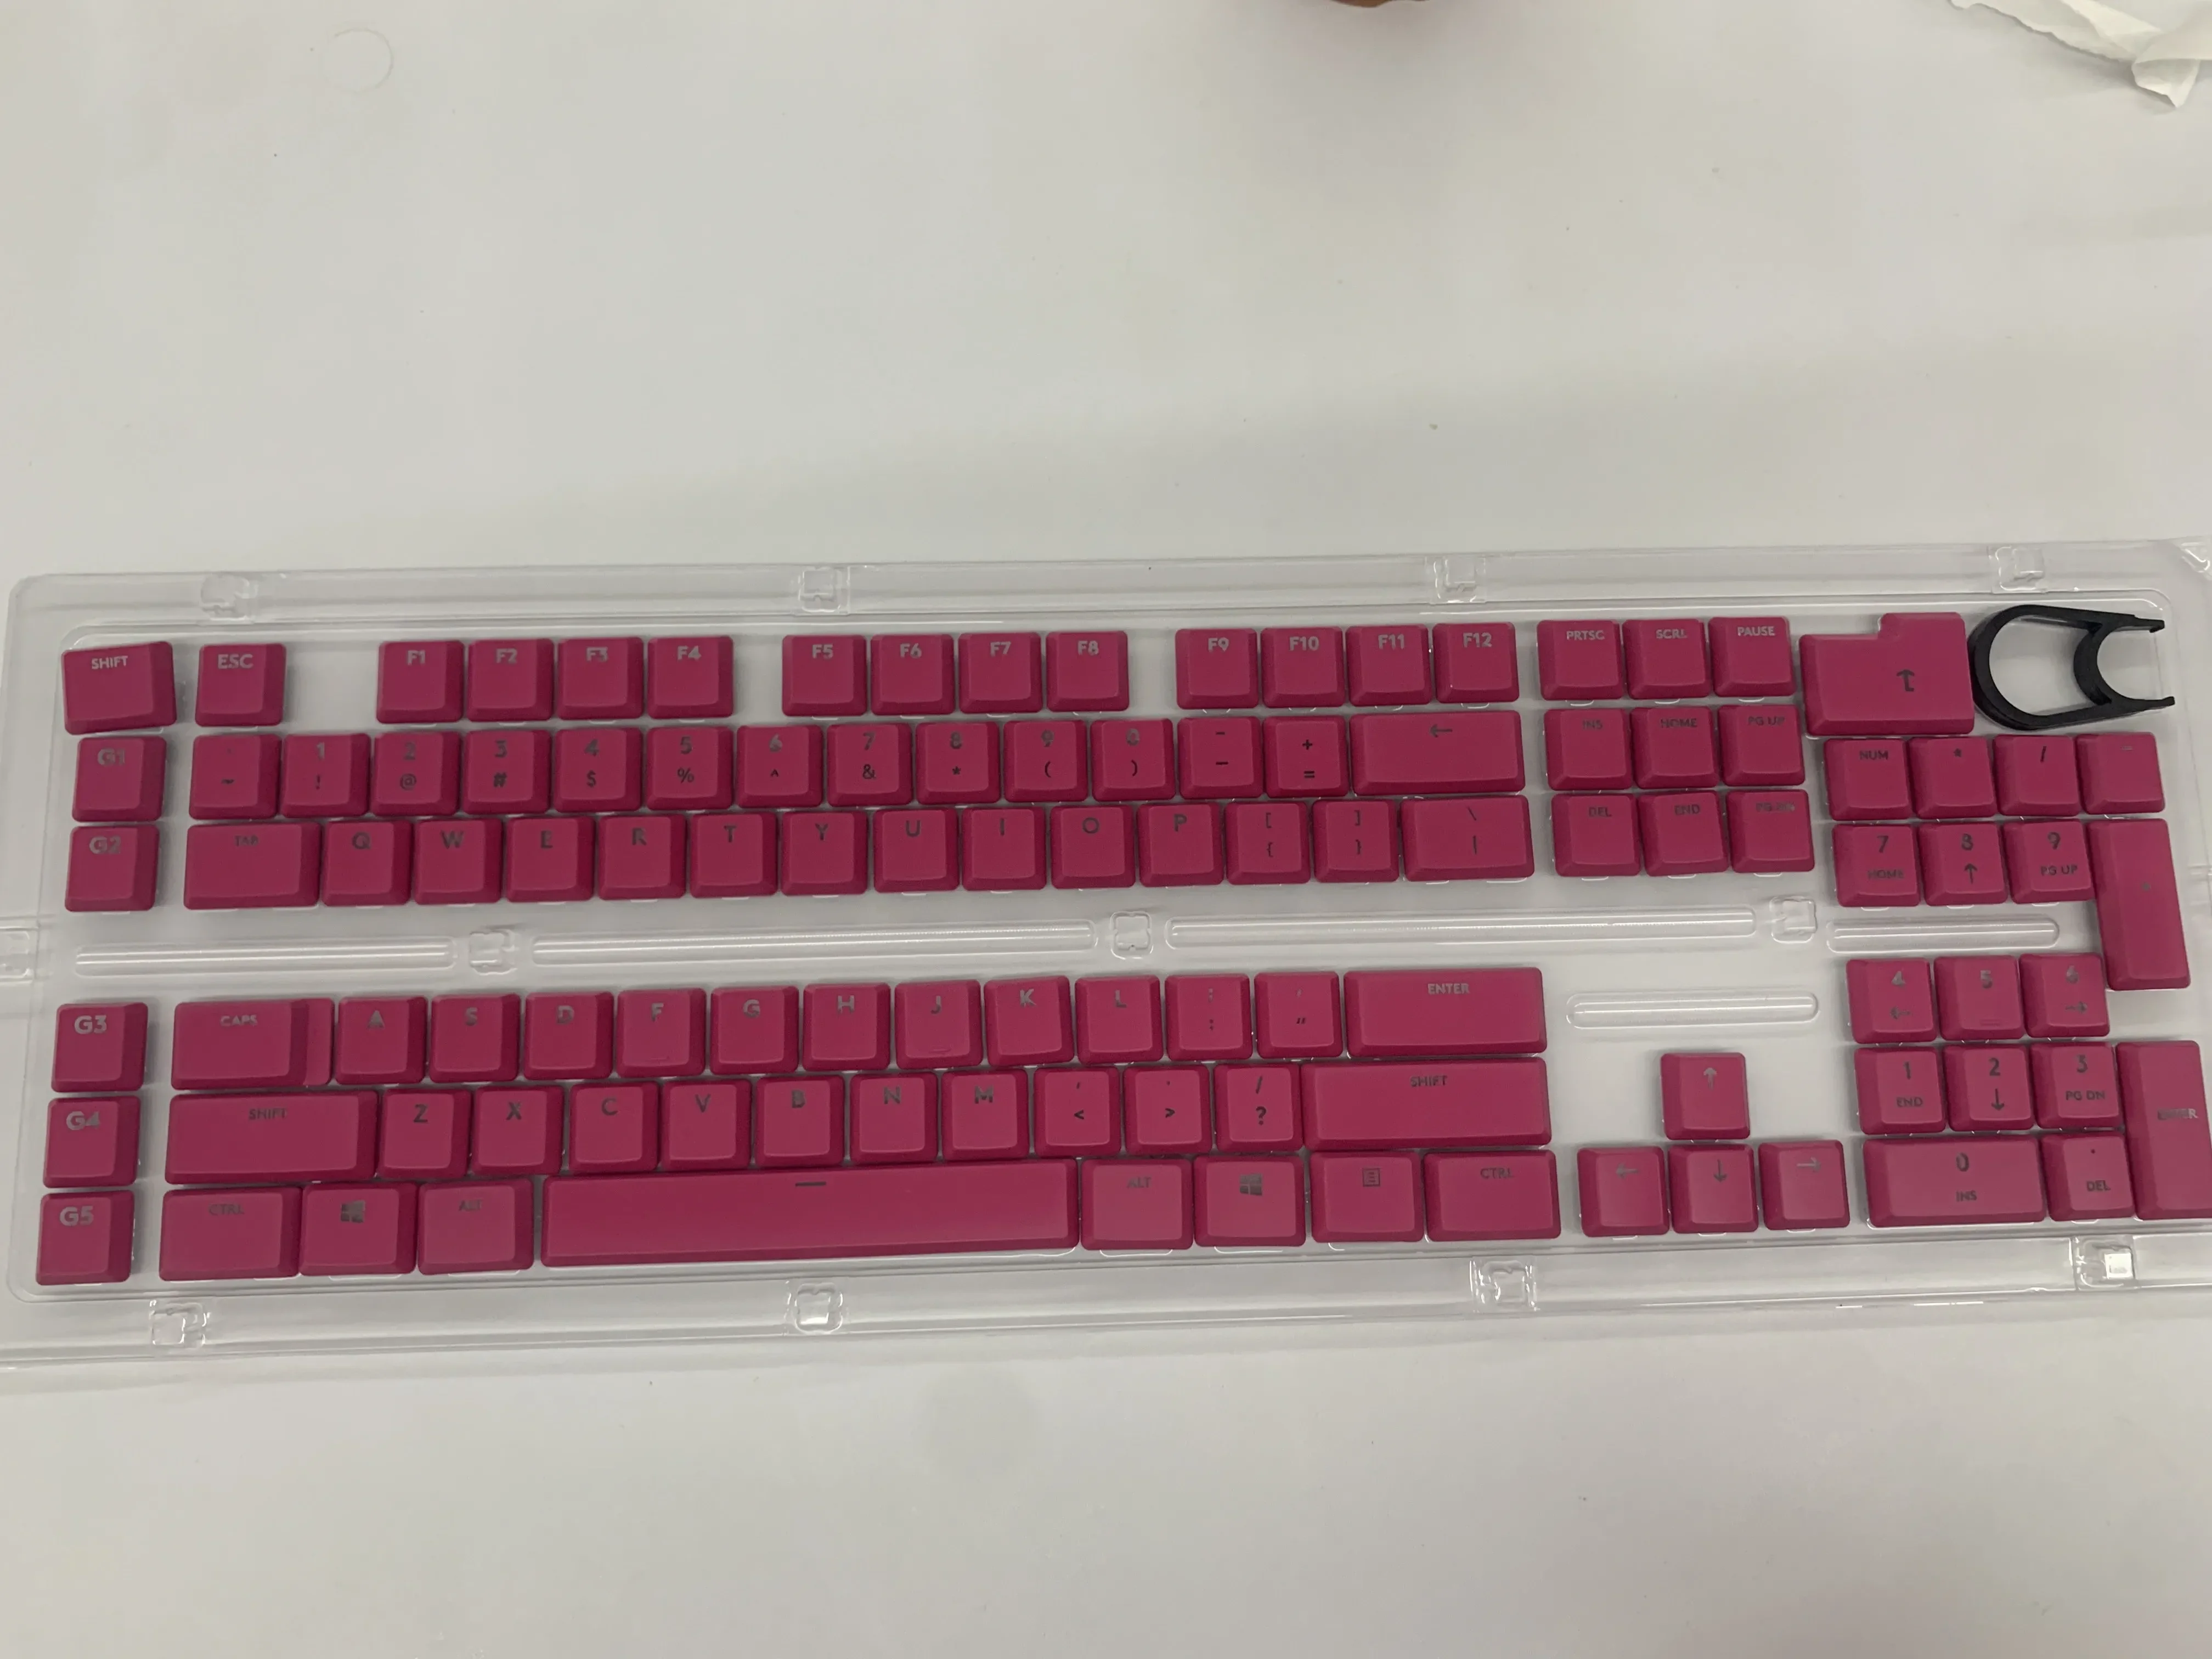 

Колпачки для клавиатуры Logitech G915TKL G915 G815, 111 полные клавиши. Сменные колпачки для кнопок, цветные колпачки для кнопок «сделай сам»